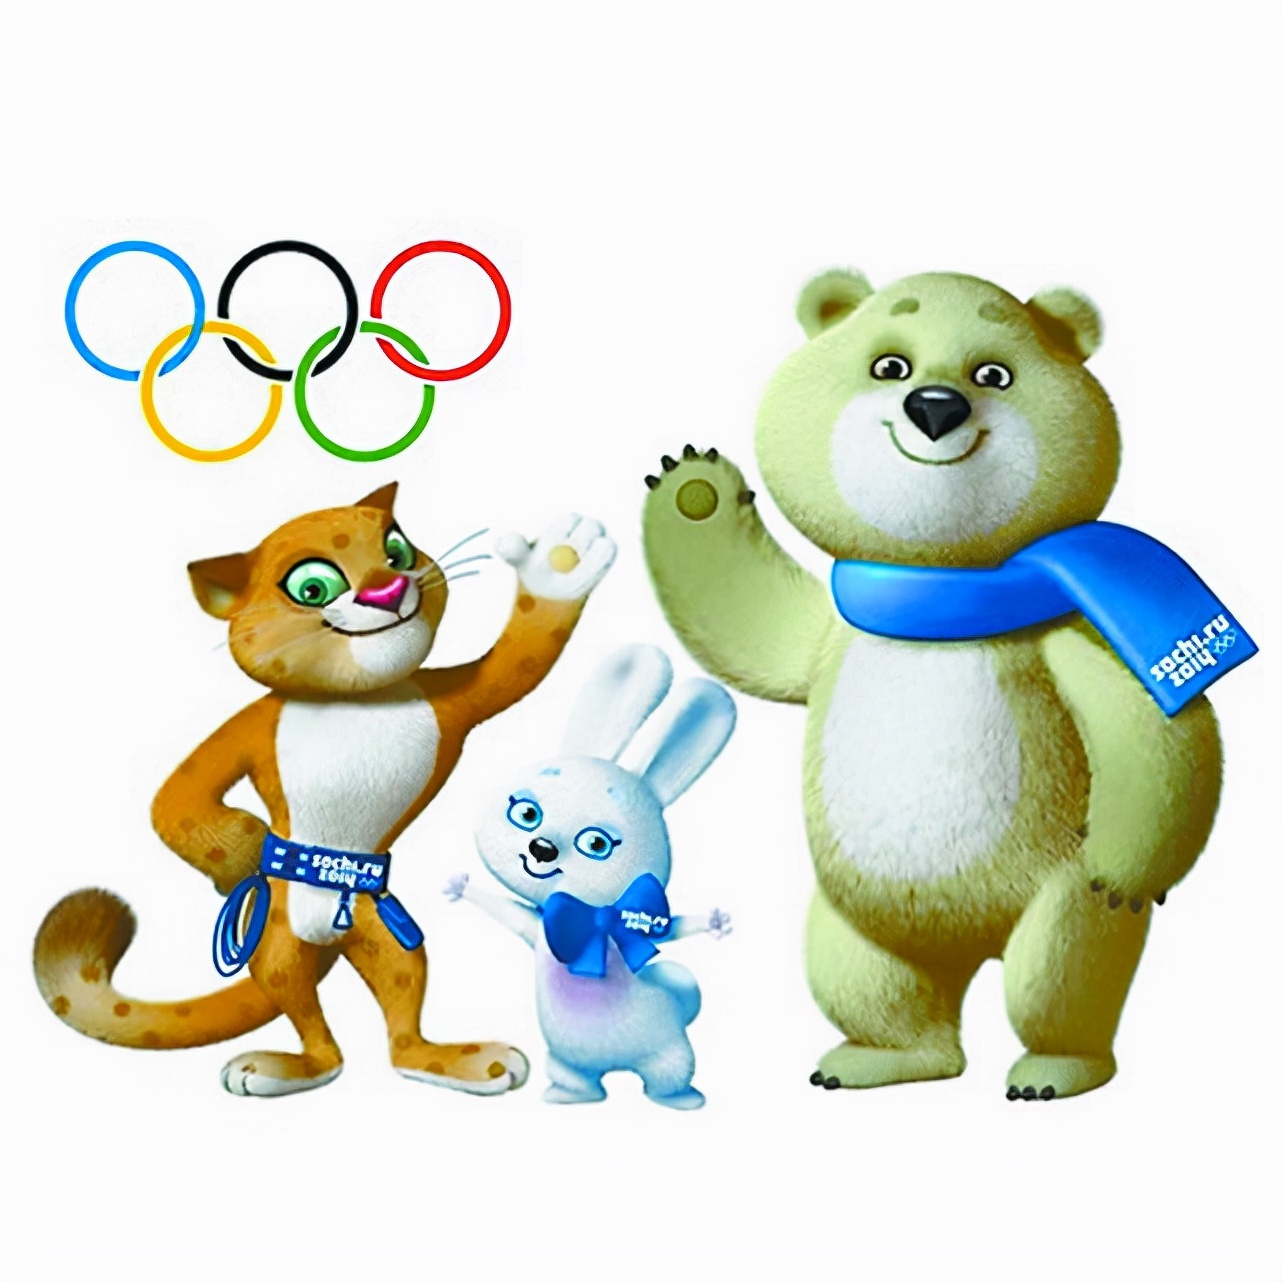 2022年奥运会吉祥物叫什么(温故冬奥 冰雪奇缘 | 首个奥运吉祥物源自冬奥会)